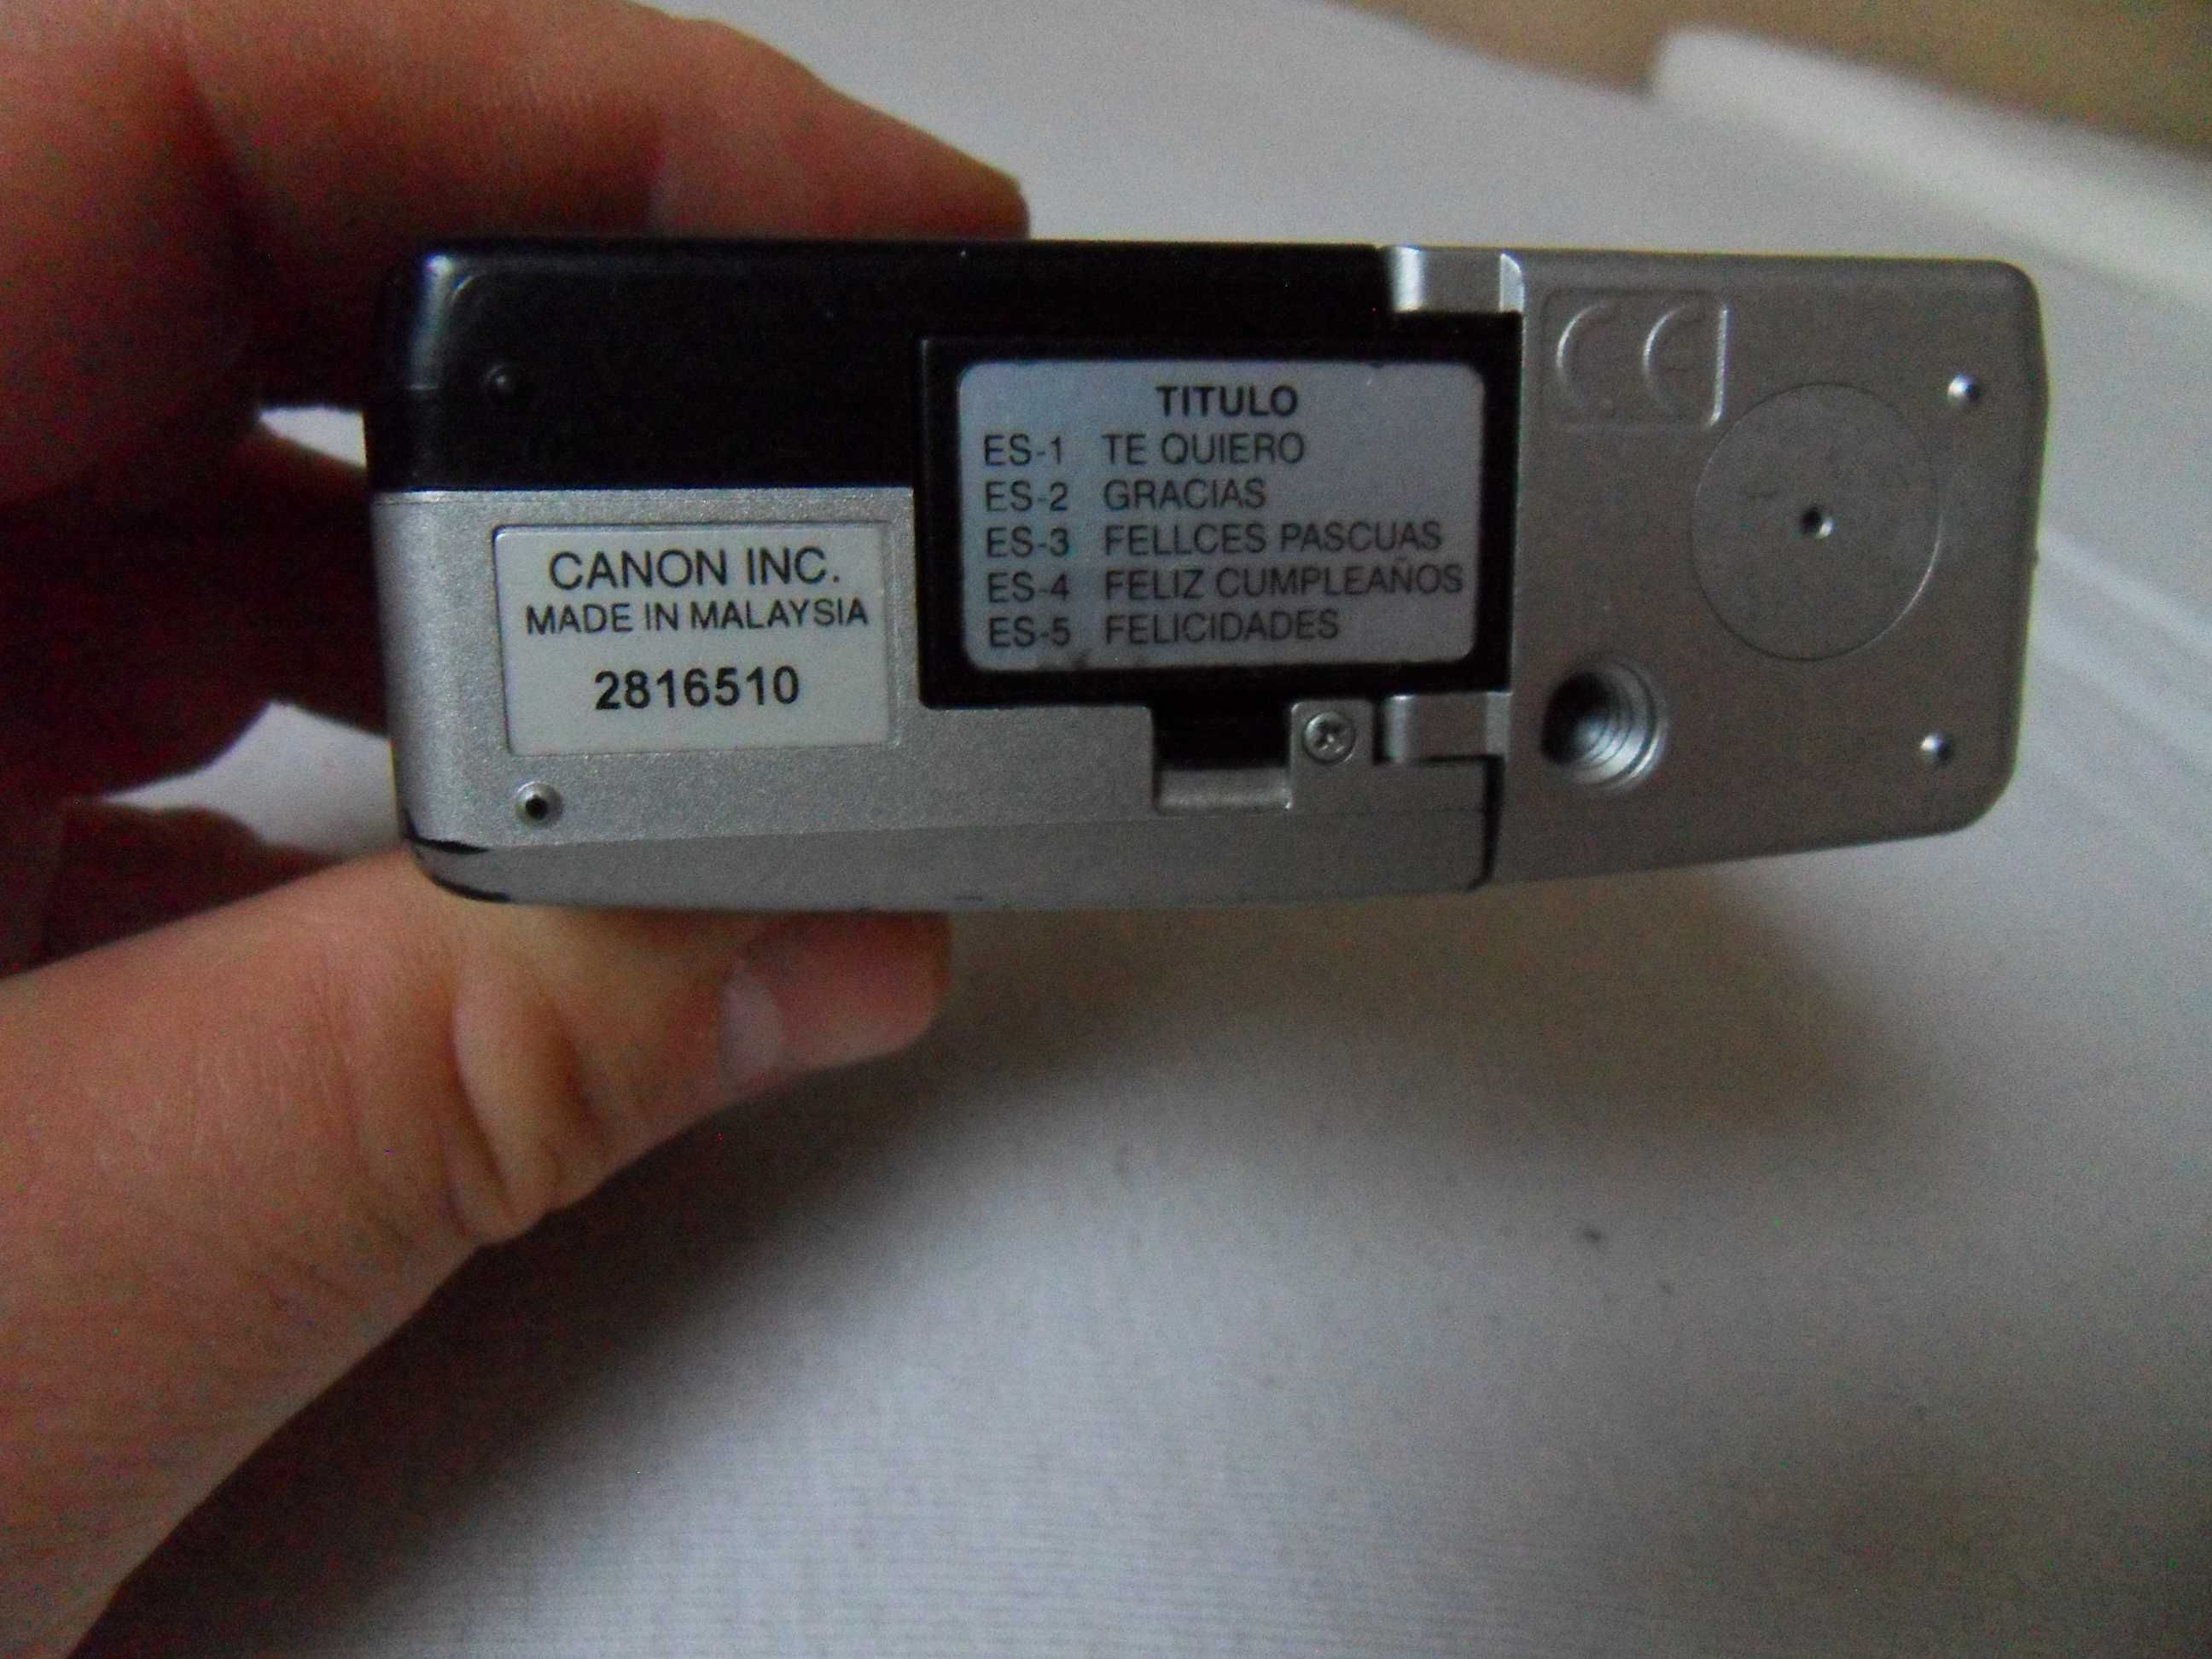 Aparat kompaktowy analogowy Canon ELPH LT sprawny